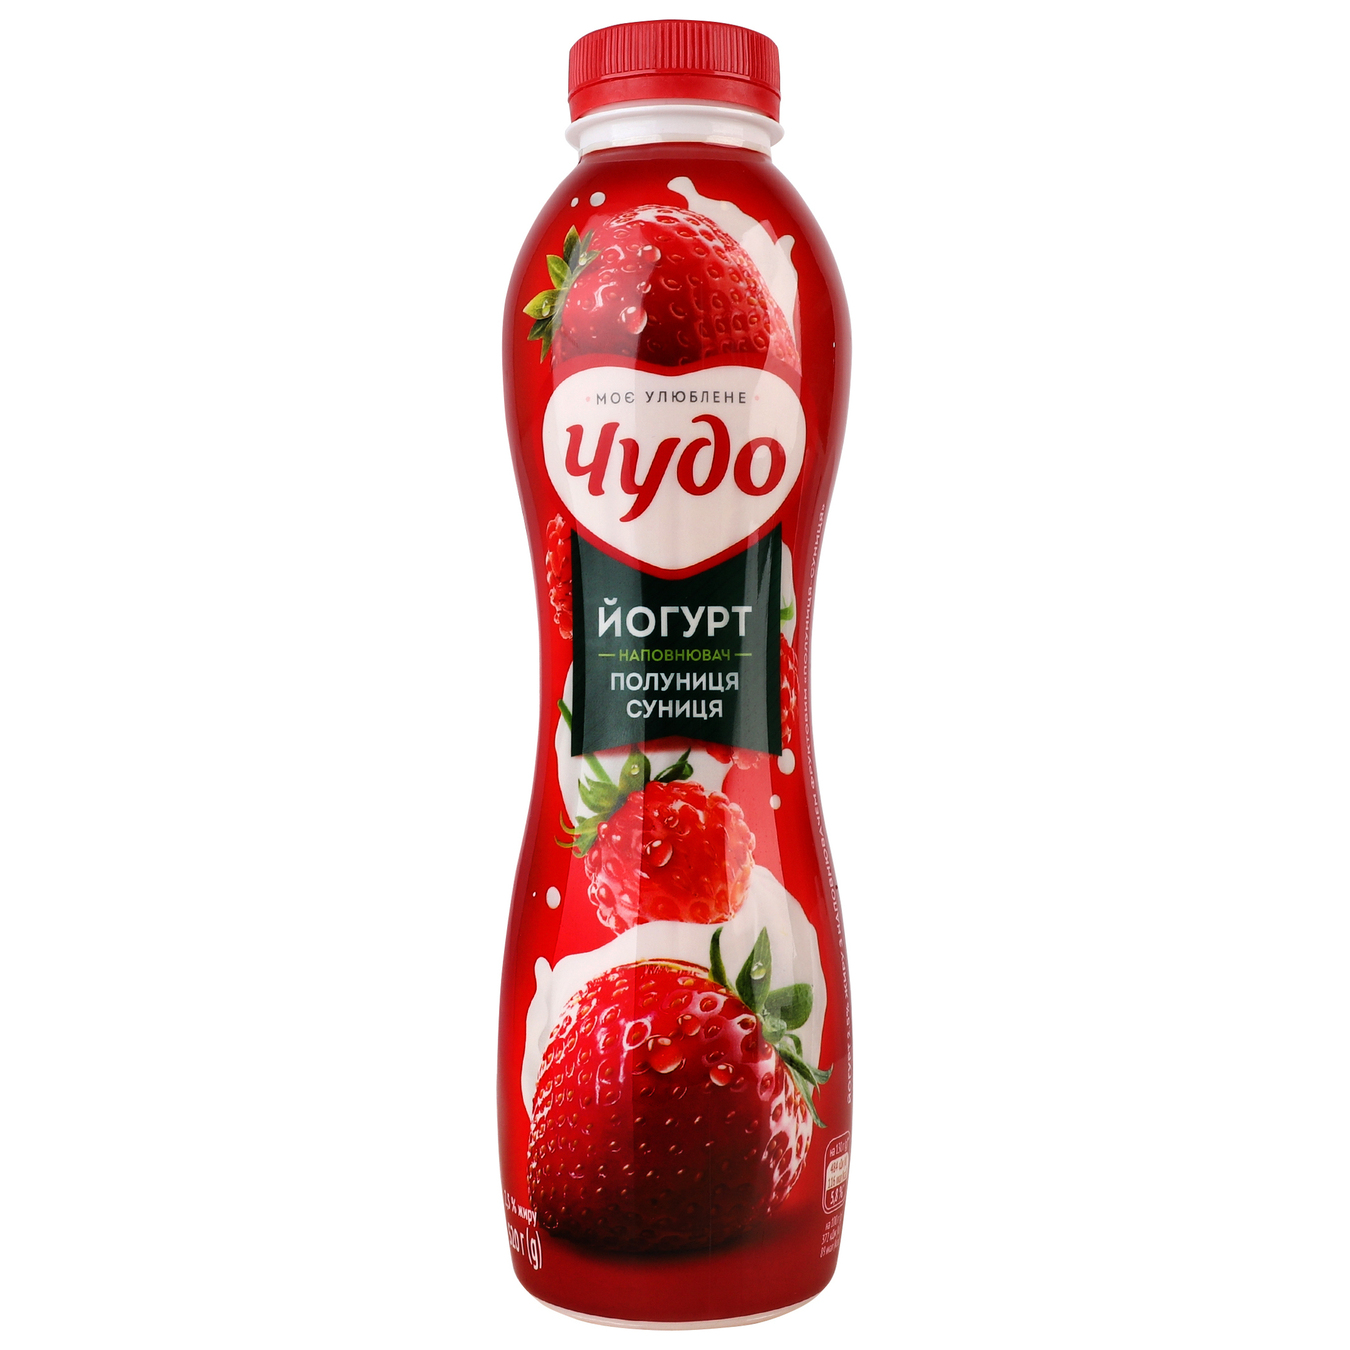 Chudo Yogurt Strawberry-Strawberry 2.5% 520g